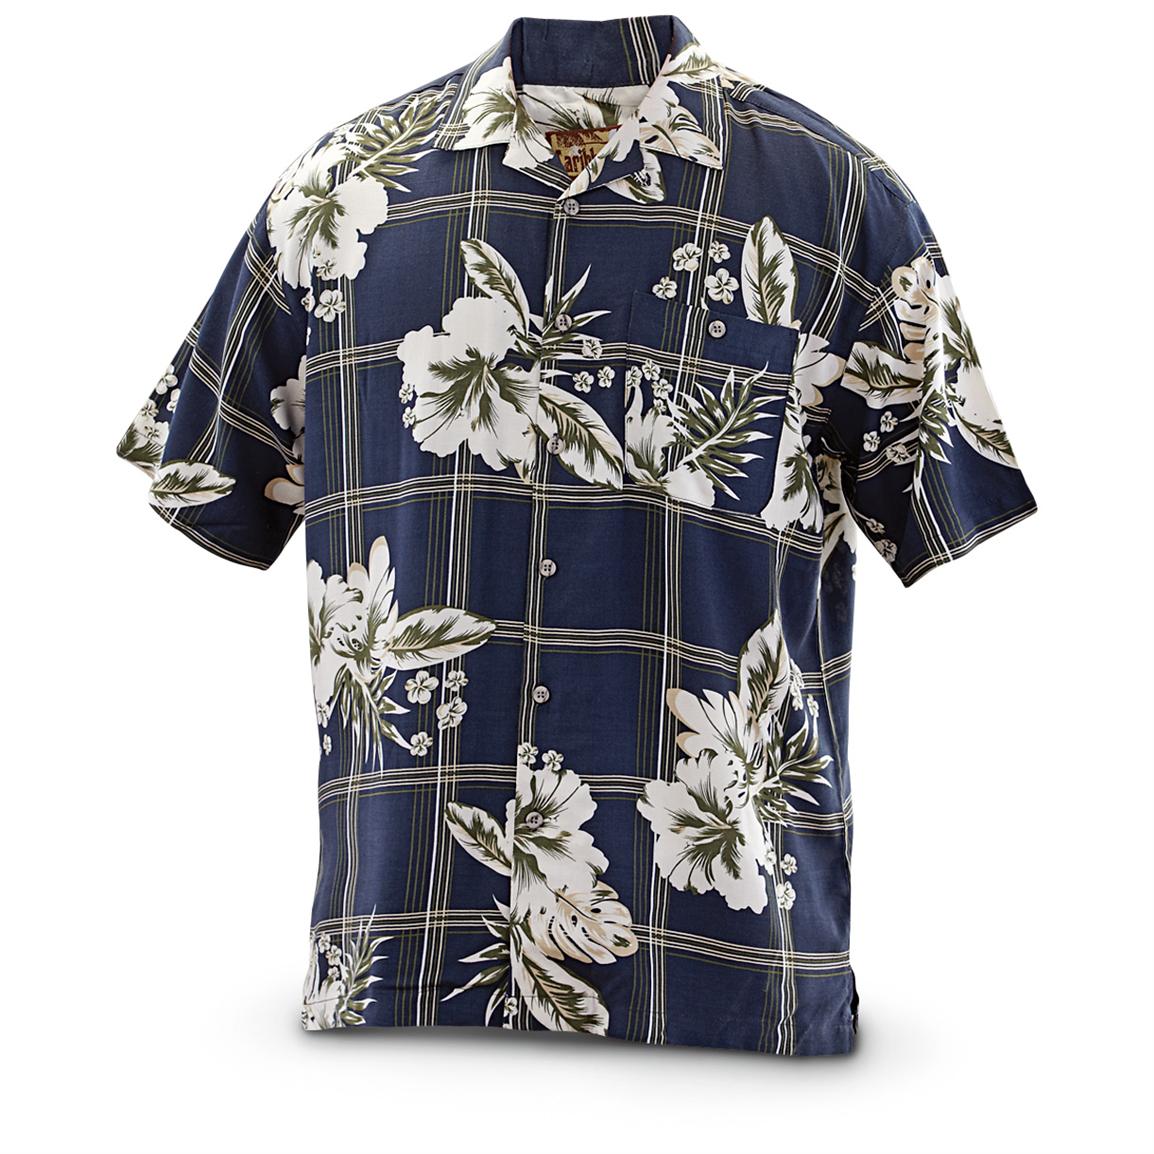 Rayon Tropical Shirt - 227254, Shirts at Sportsman's Guide